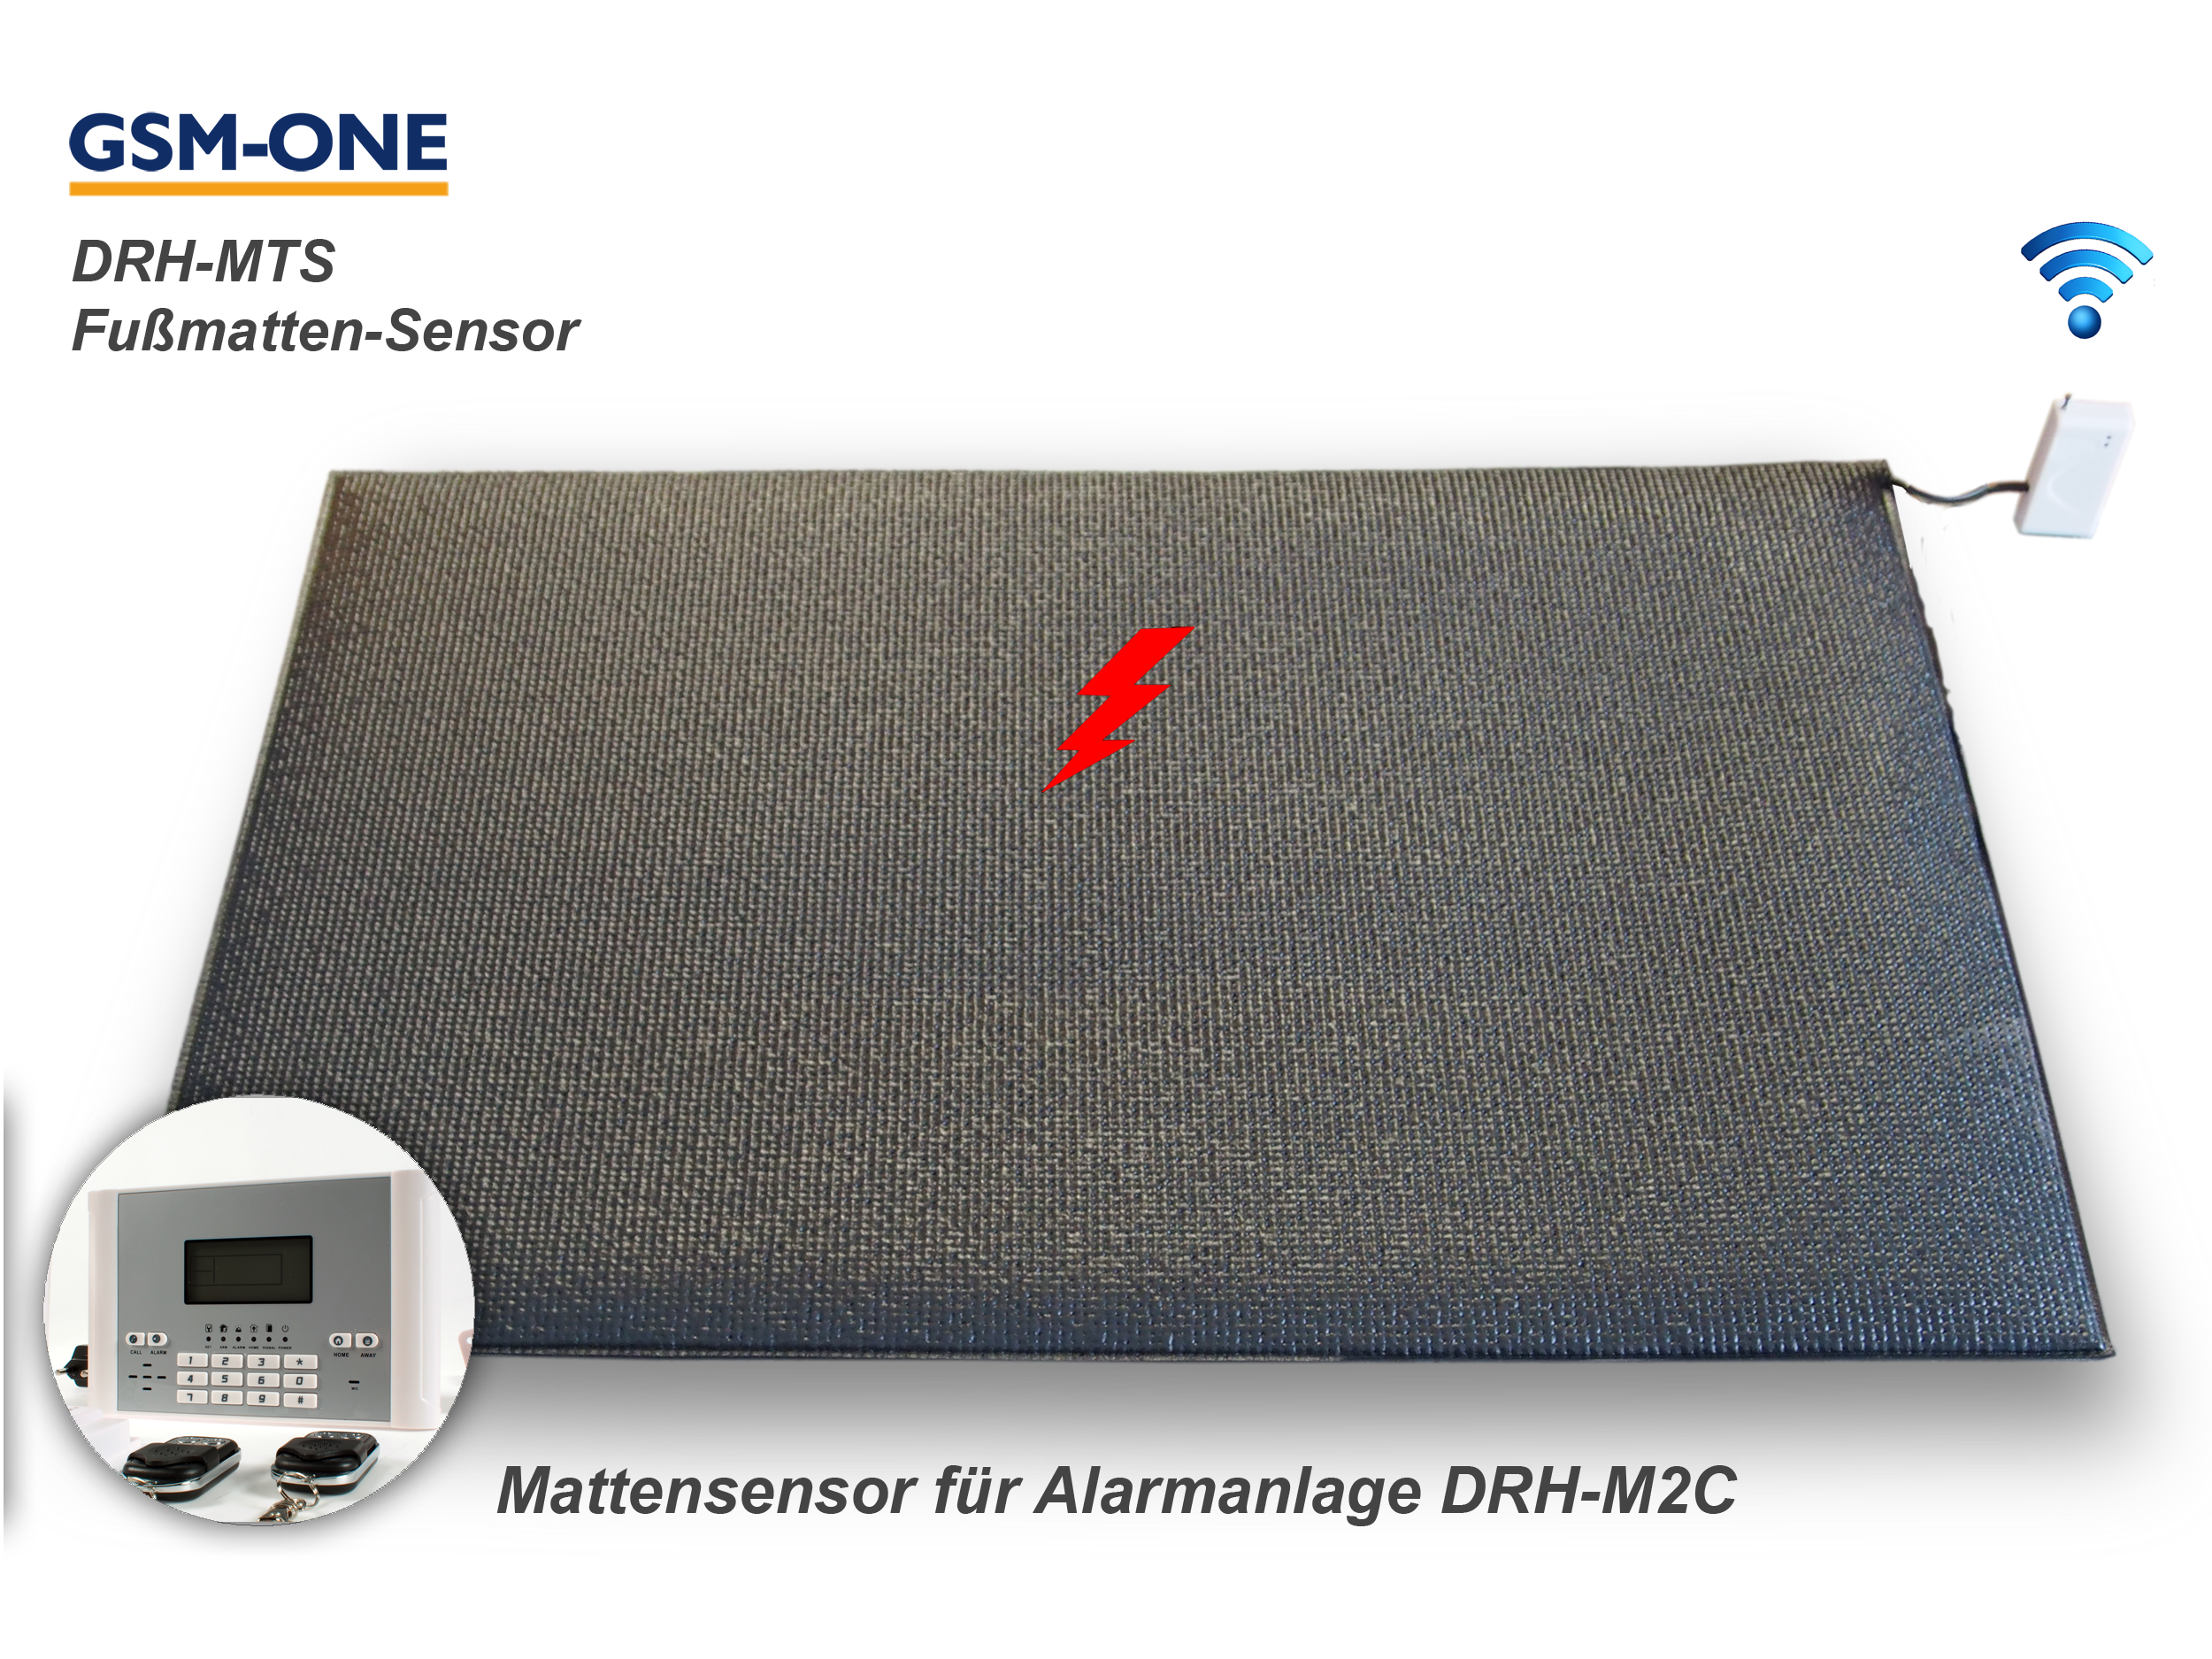 Fussmatten-Sensor inkl. Transmitter für Alarmanlage DRH-M2C